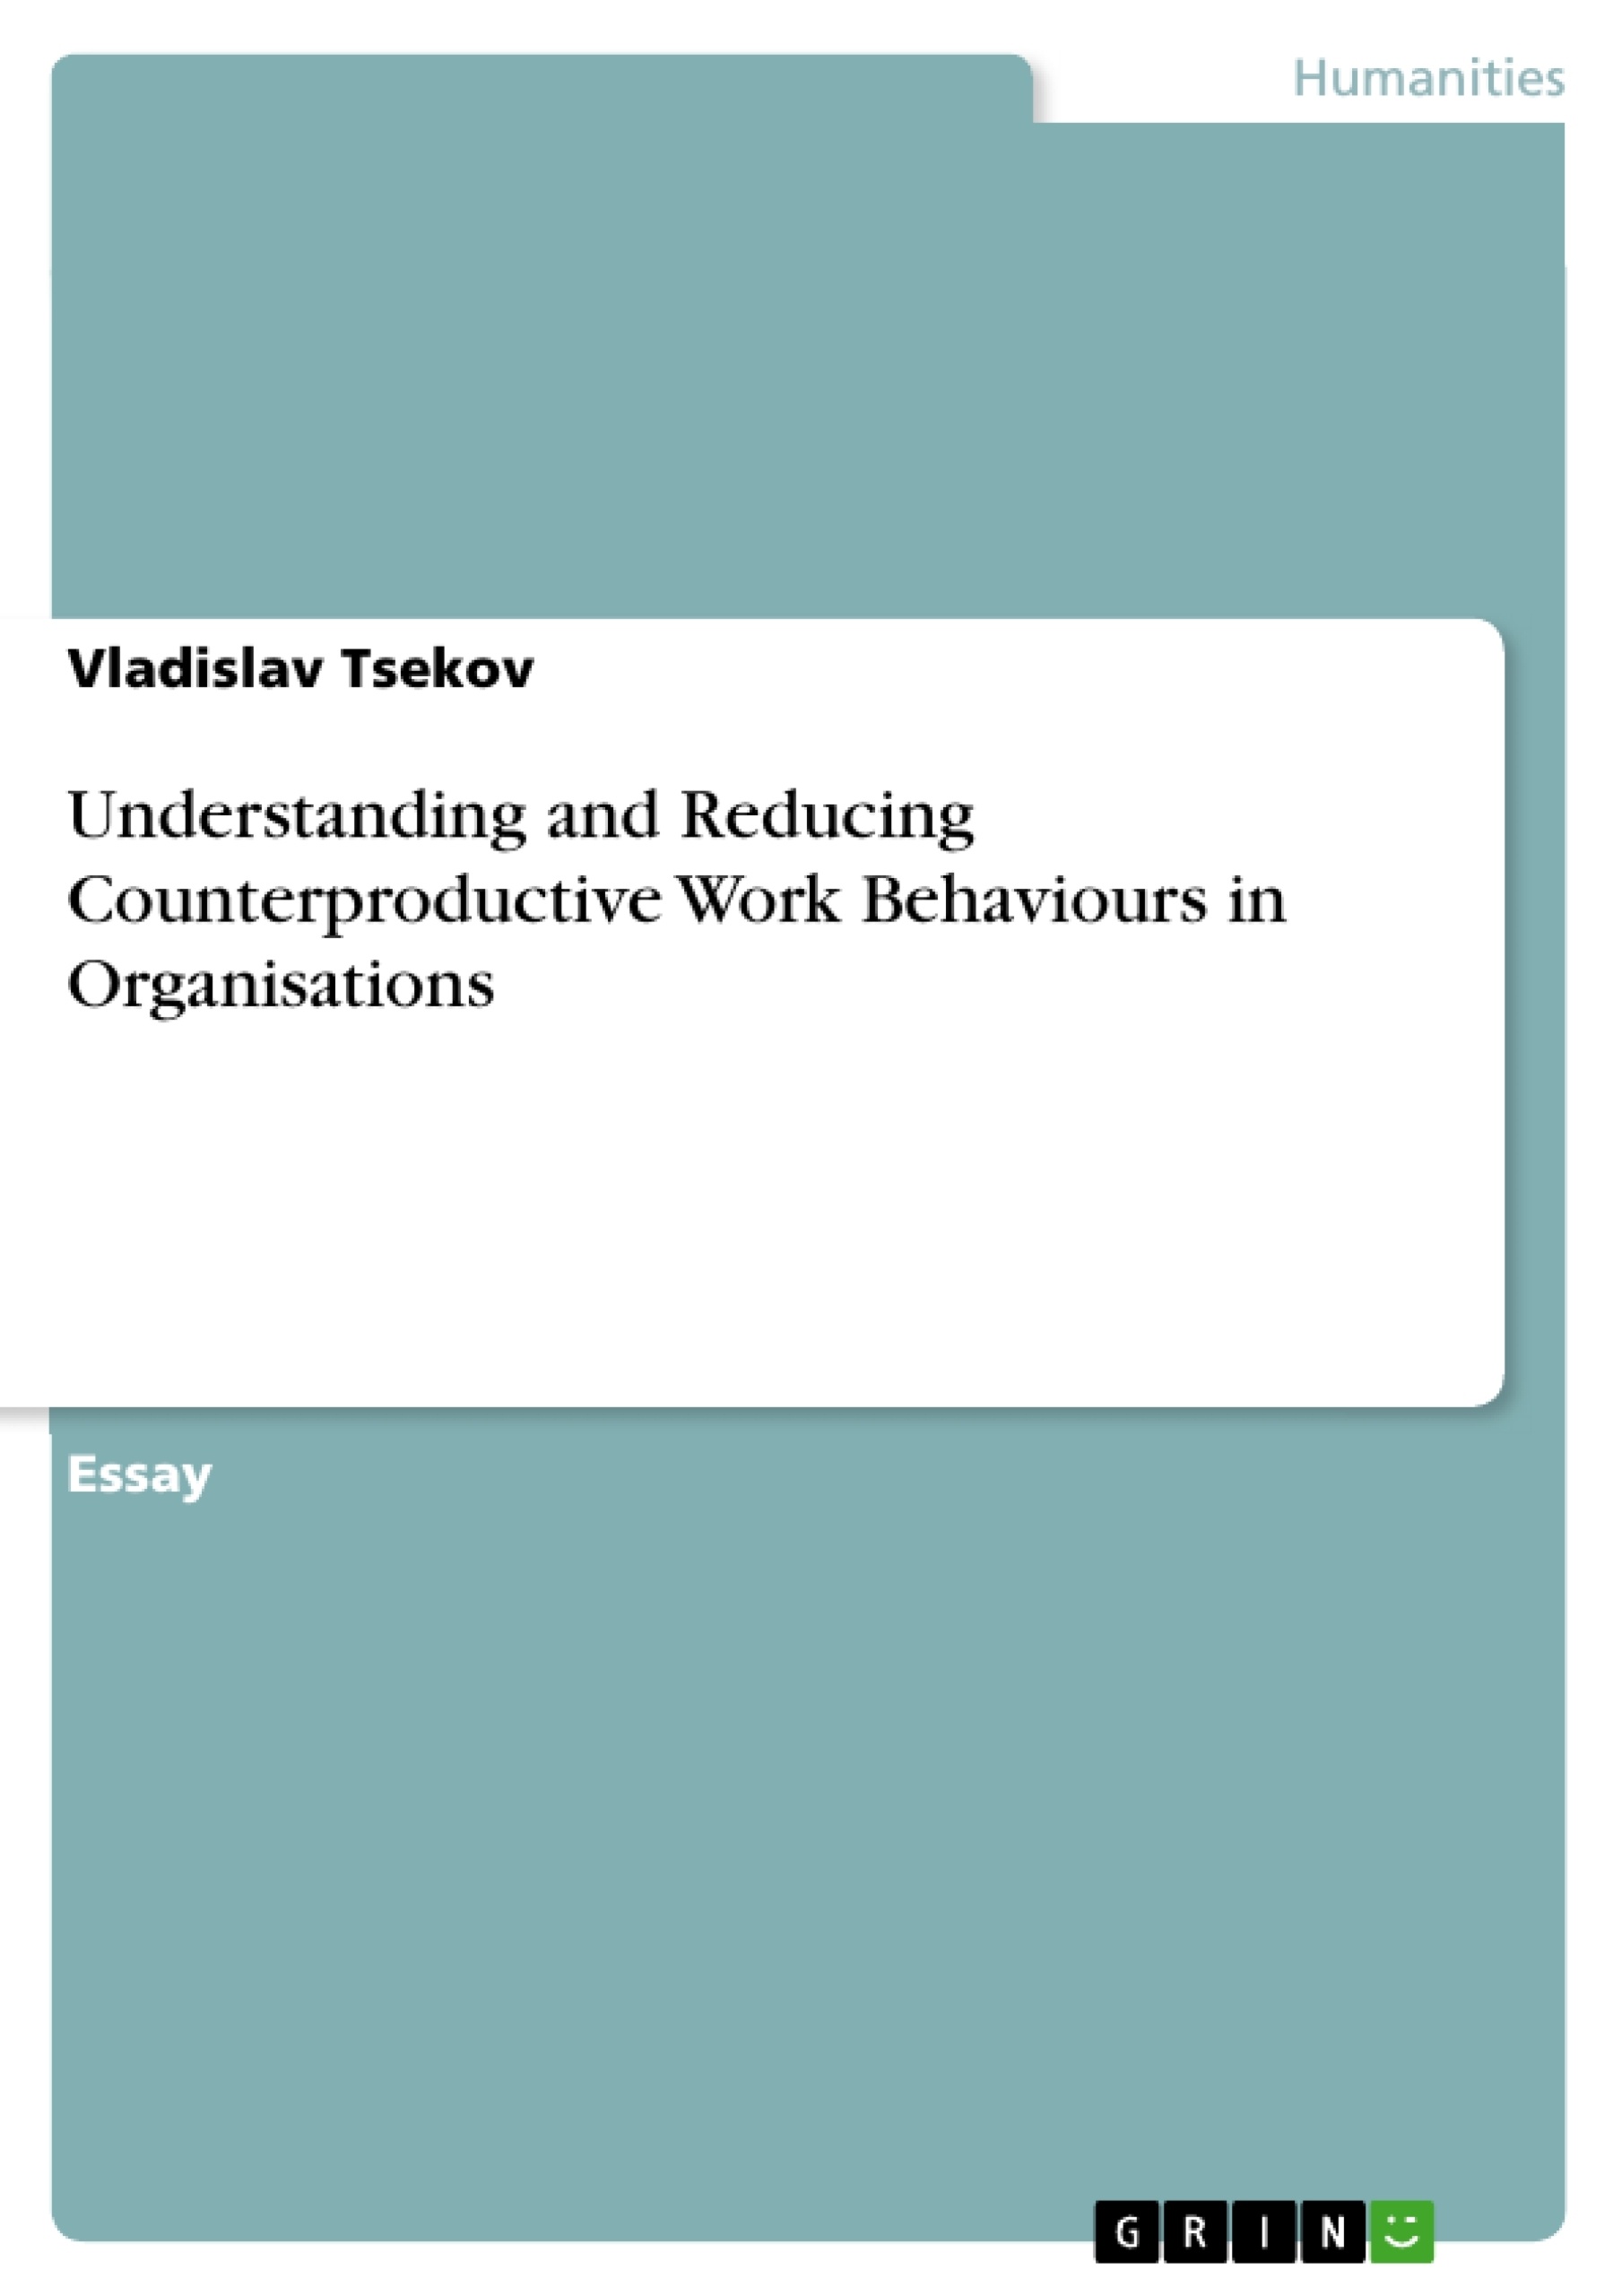 Title: Understanding and Reducing Counterproductive Work Behaviours in Organisations